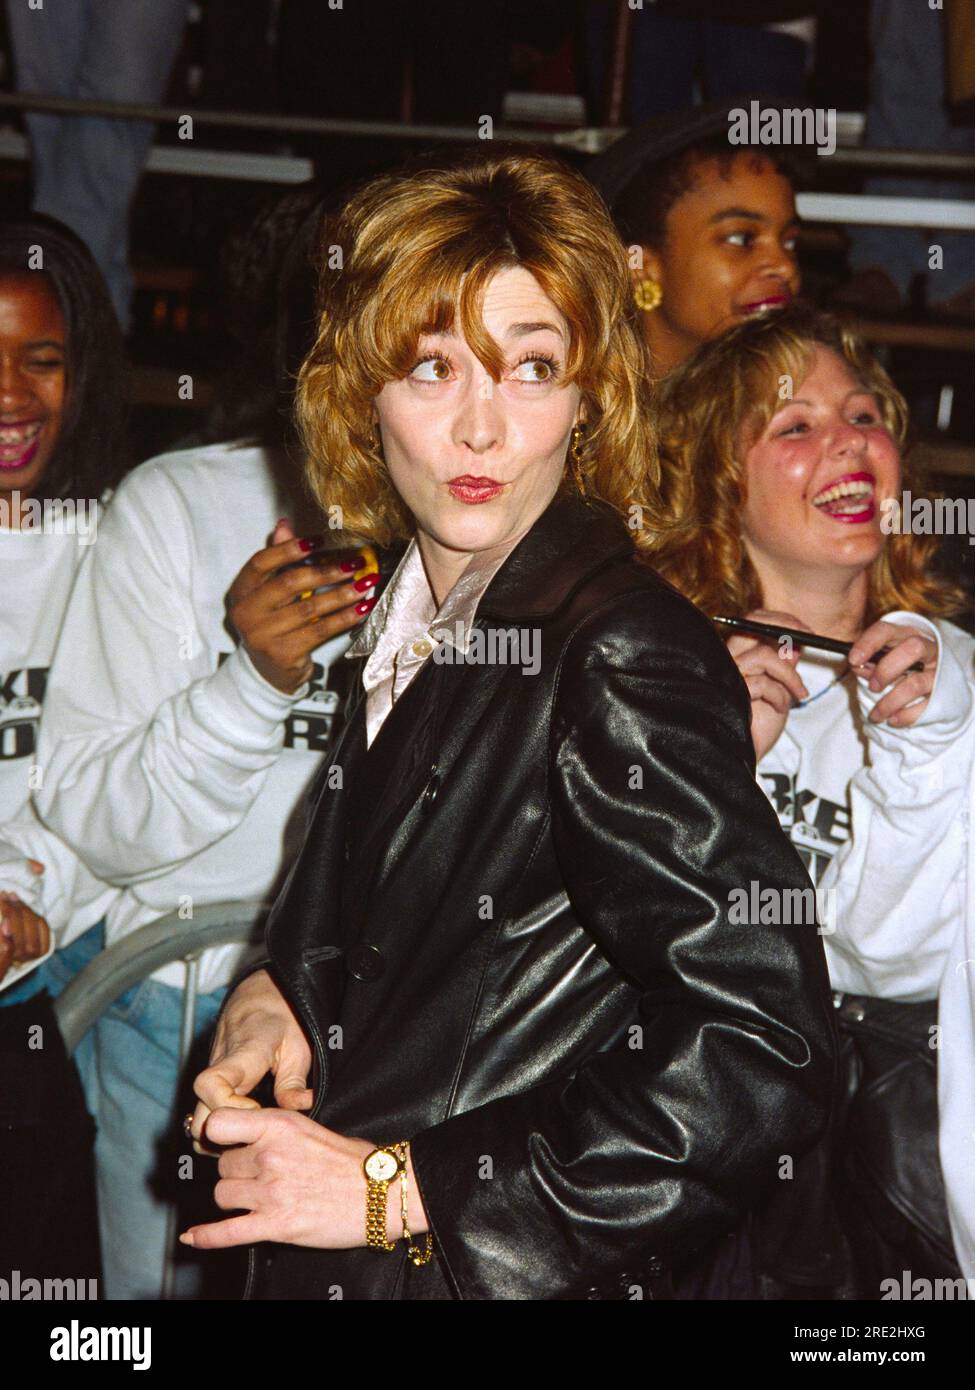 ARCHIV: LOS ANGELES, KALIFORNIEN. 6. Februar 1996: Schauspielerin Sharon Lawrence bei der Premiere von "Broken Arrow". Bild: Paul Smith / Featureflash Stockfoto